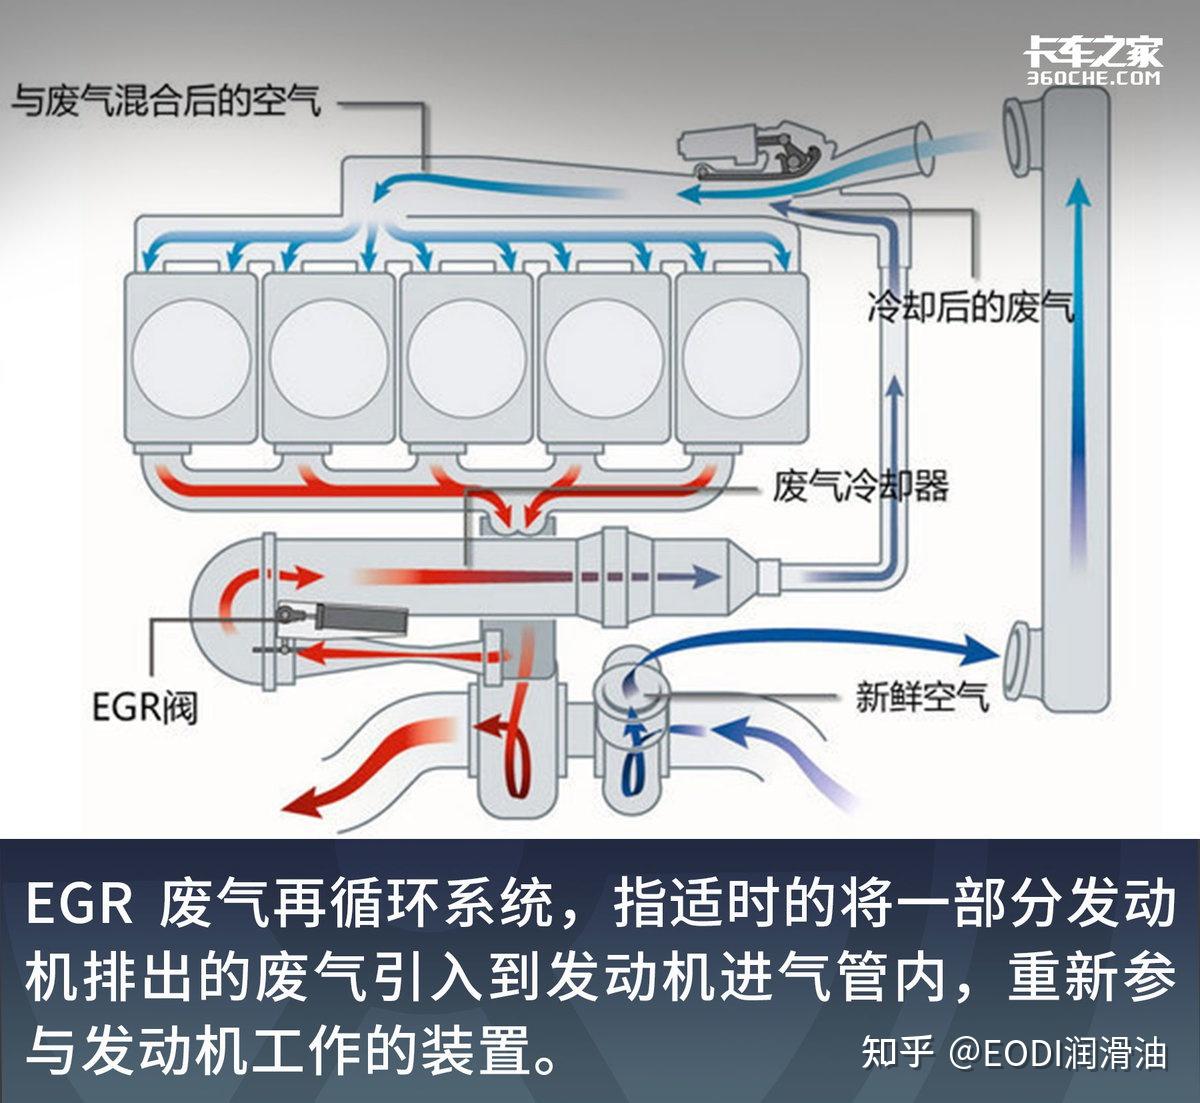 egr,即废气再循环系统,其是指将发动机排出的废气,适时的把一部分引入